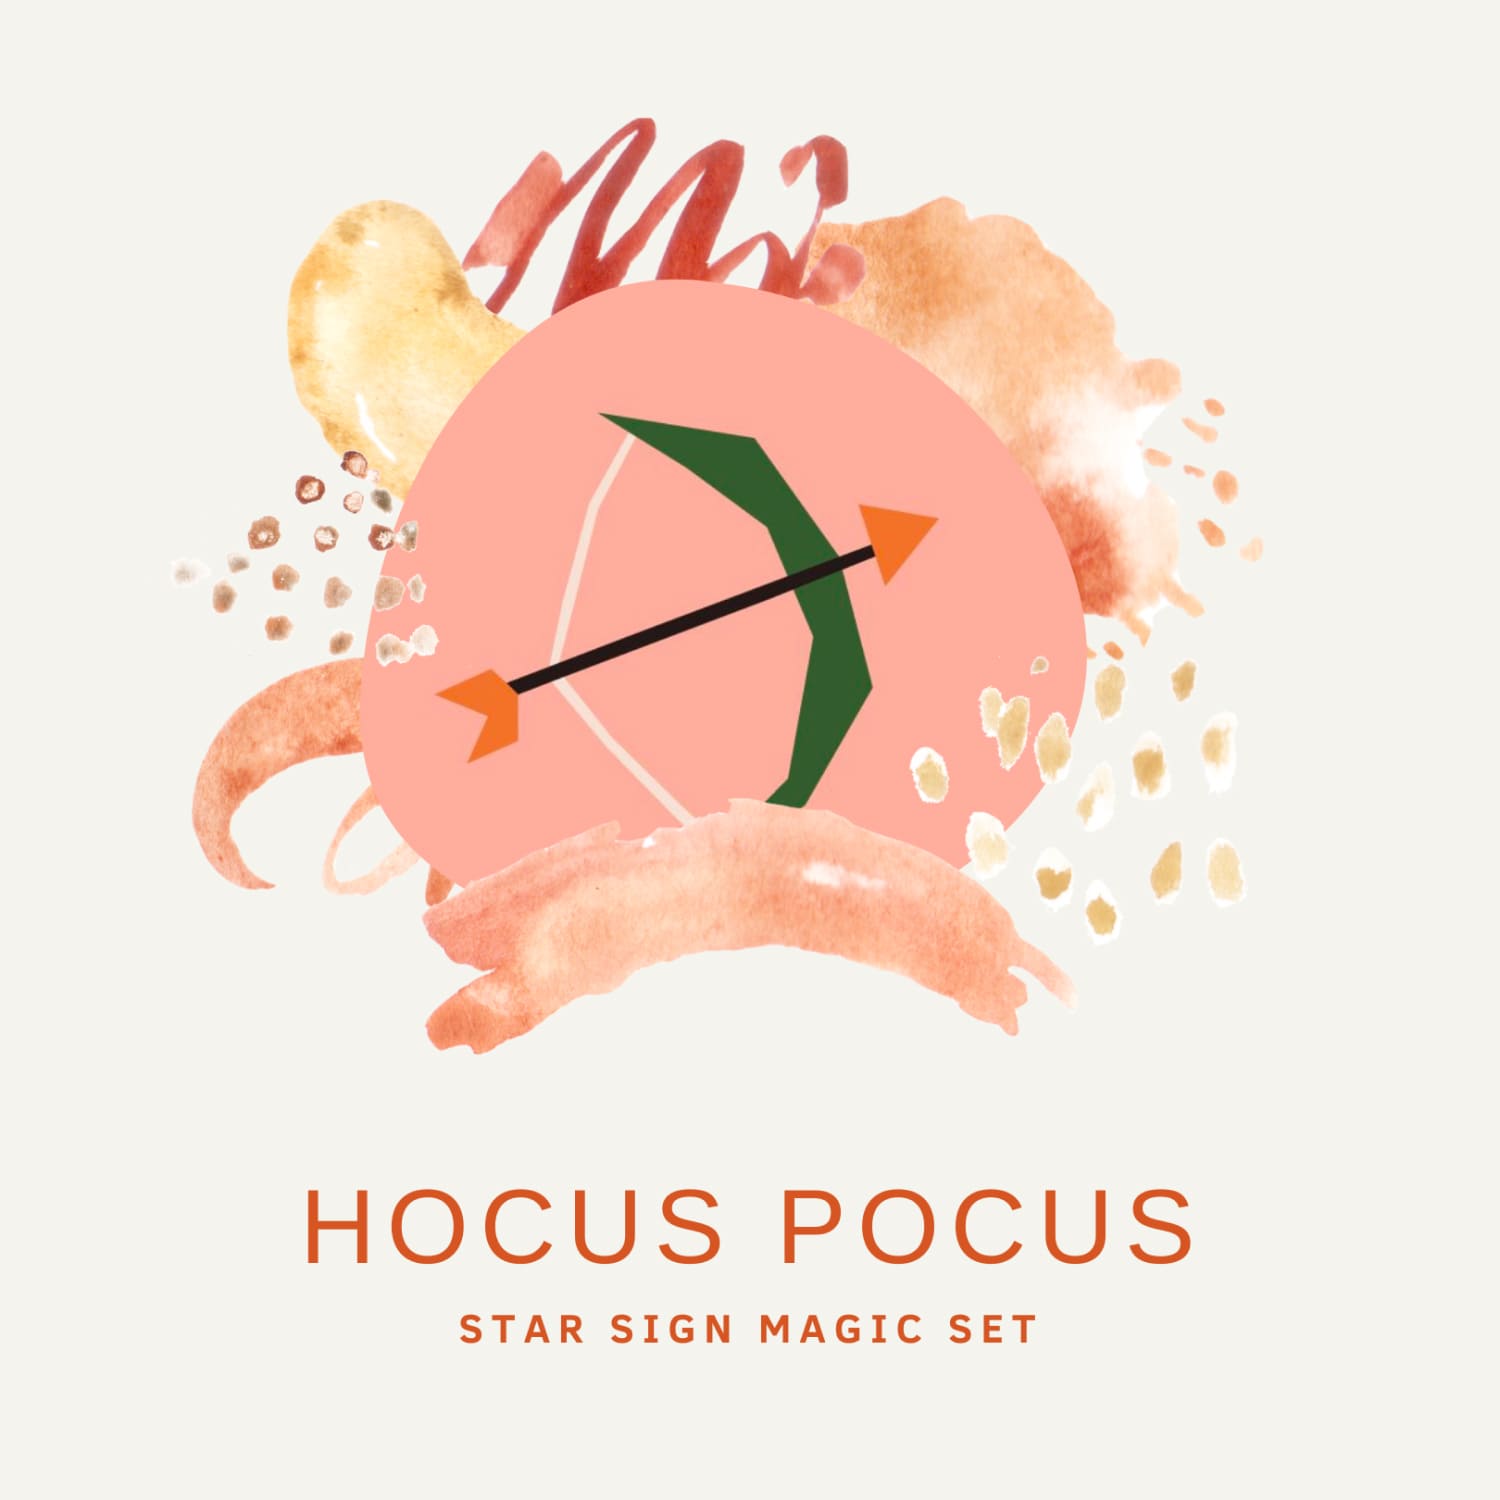 Hocus Pocus Star Sign Magic Set.